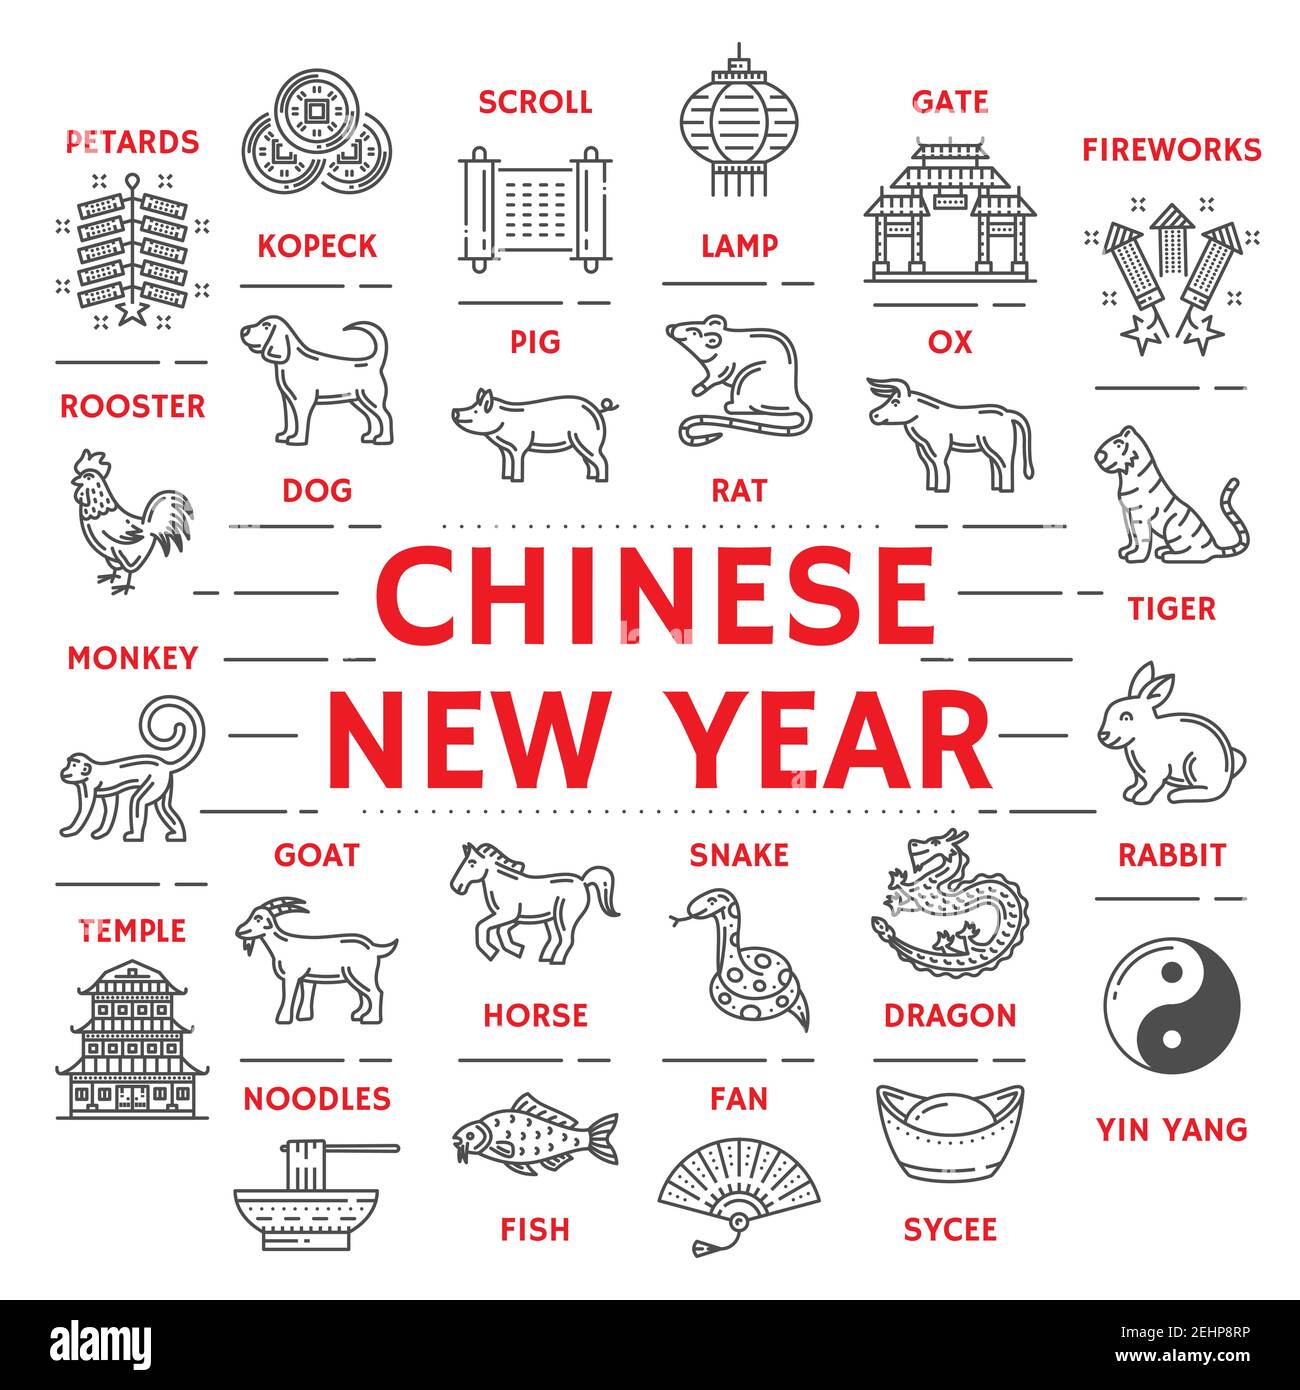 Icônes du nouvel an chinois affiche les animaux et les pécartes du zodiaque. Kopeck et scroll, lampe, porte, areworks et yin yang, sycee et ventilateur, poisson et nouilles, templ Illustration de Vecteur